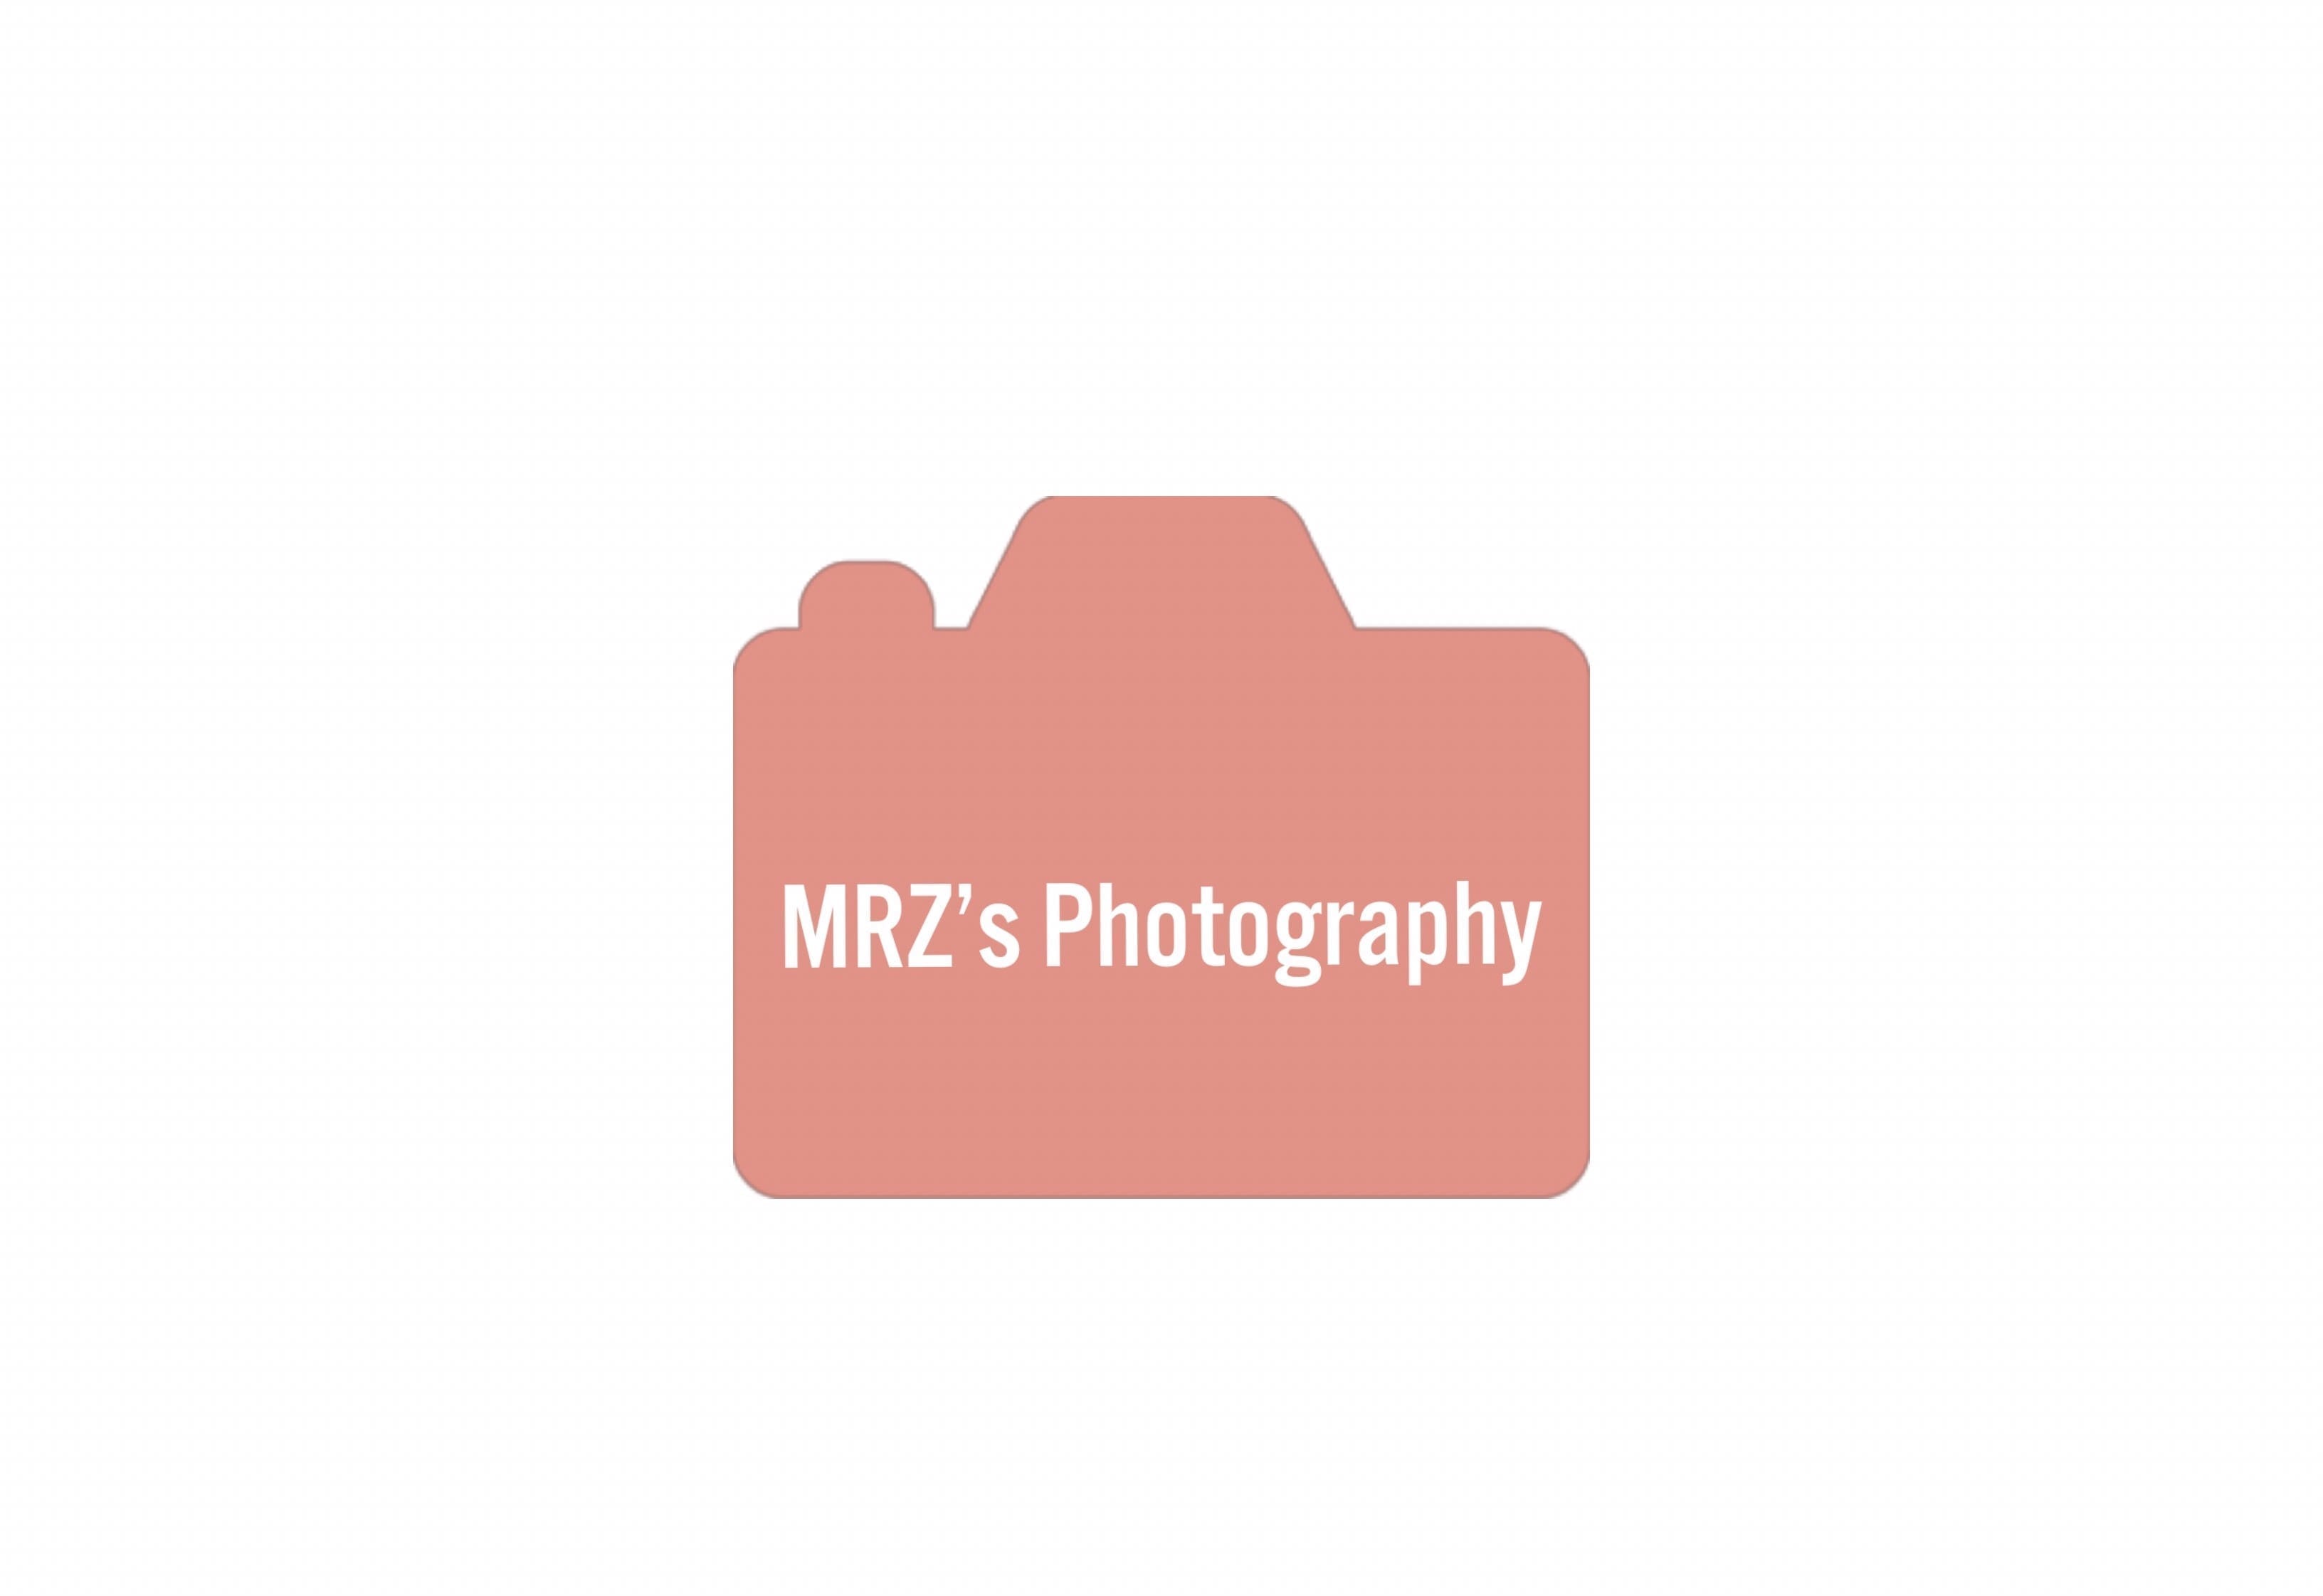 MRZ’s Photography